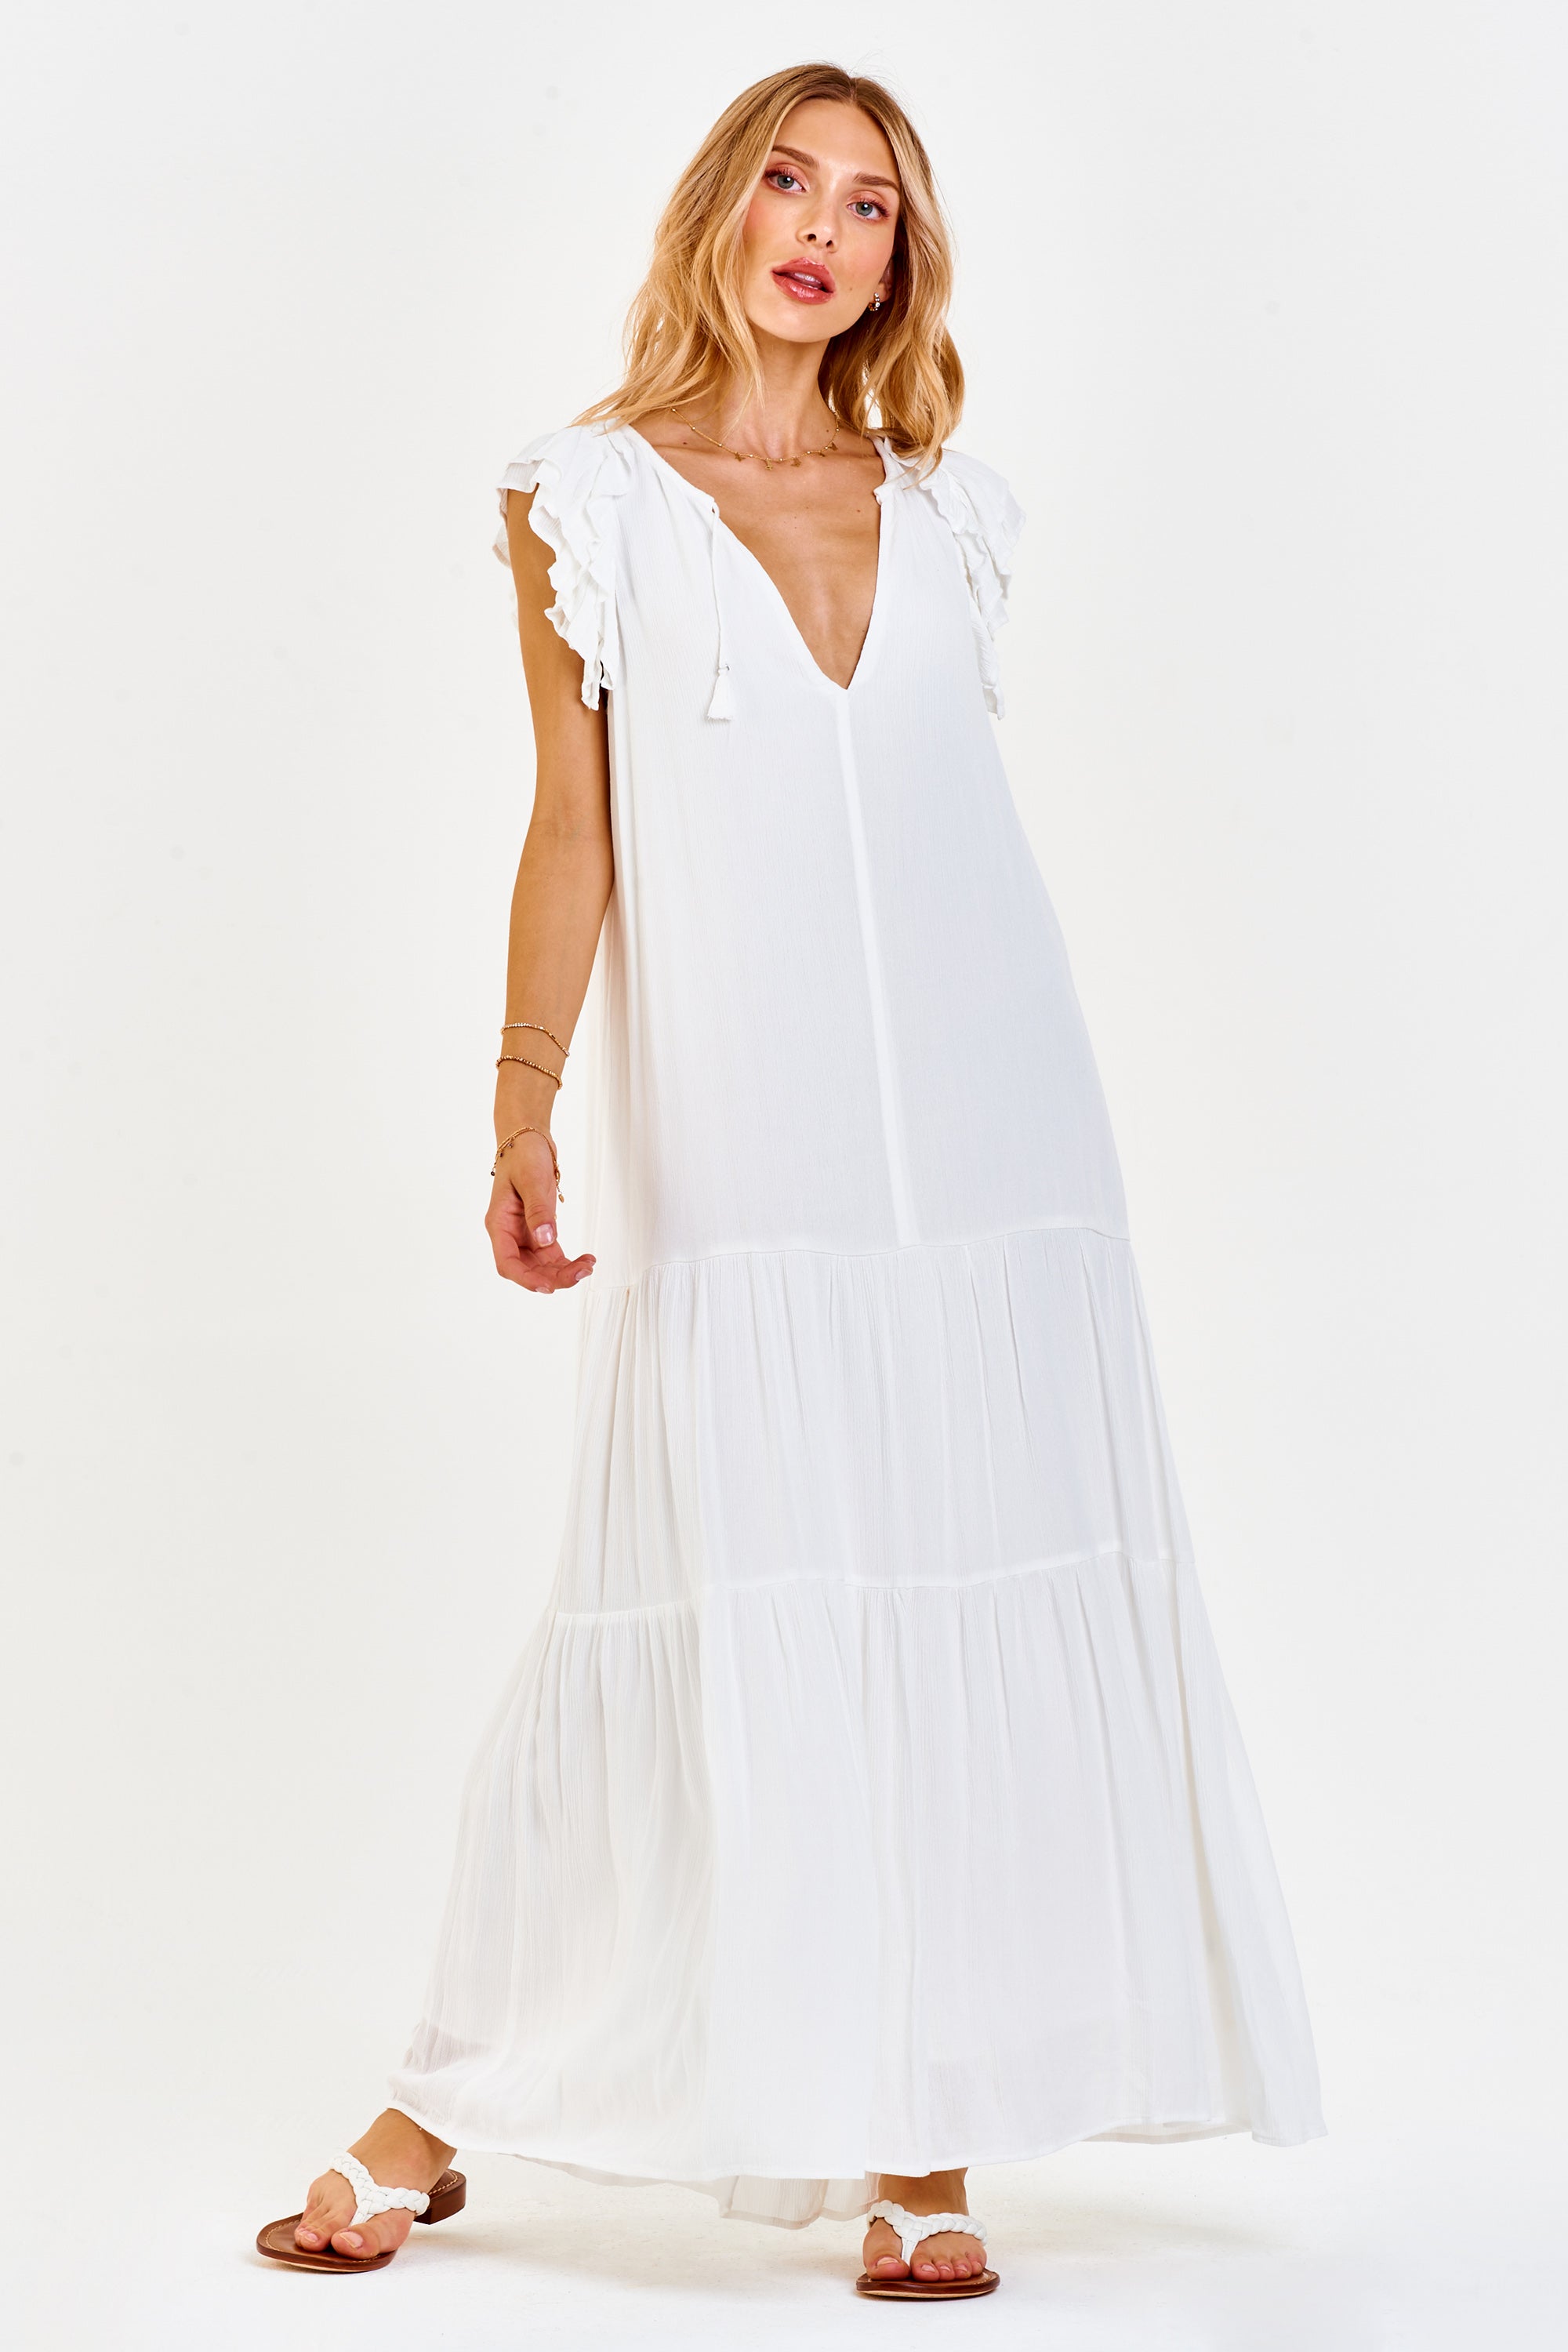 ZARA Womens Blue Denim Strapless TRF Maxi Dress Size Small $119 NEW | eBay